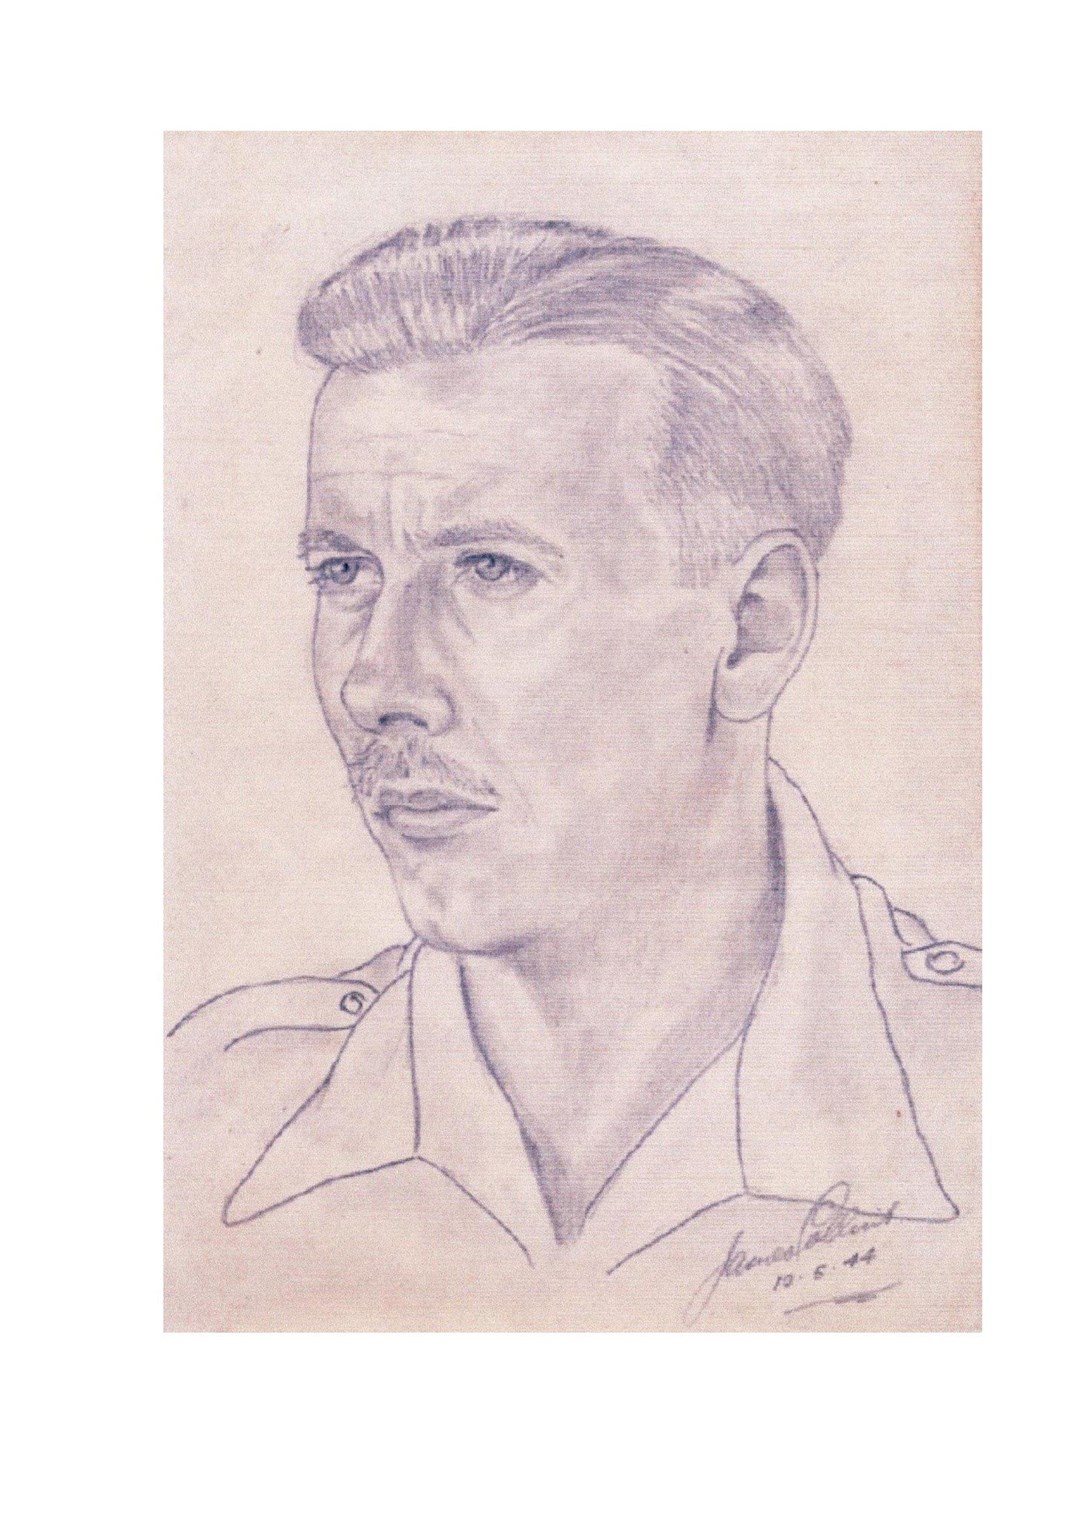 Bill Barr Cochrane in a drawing by a fellow POW